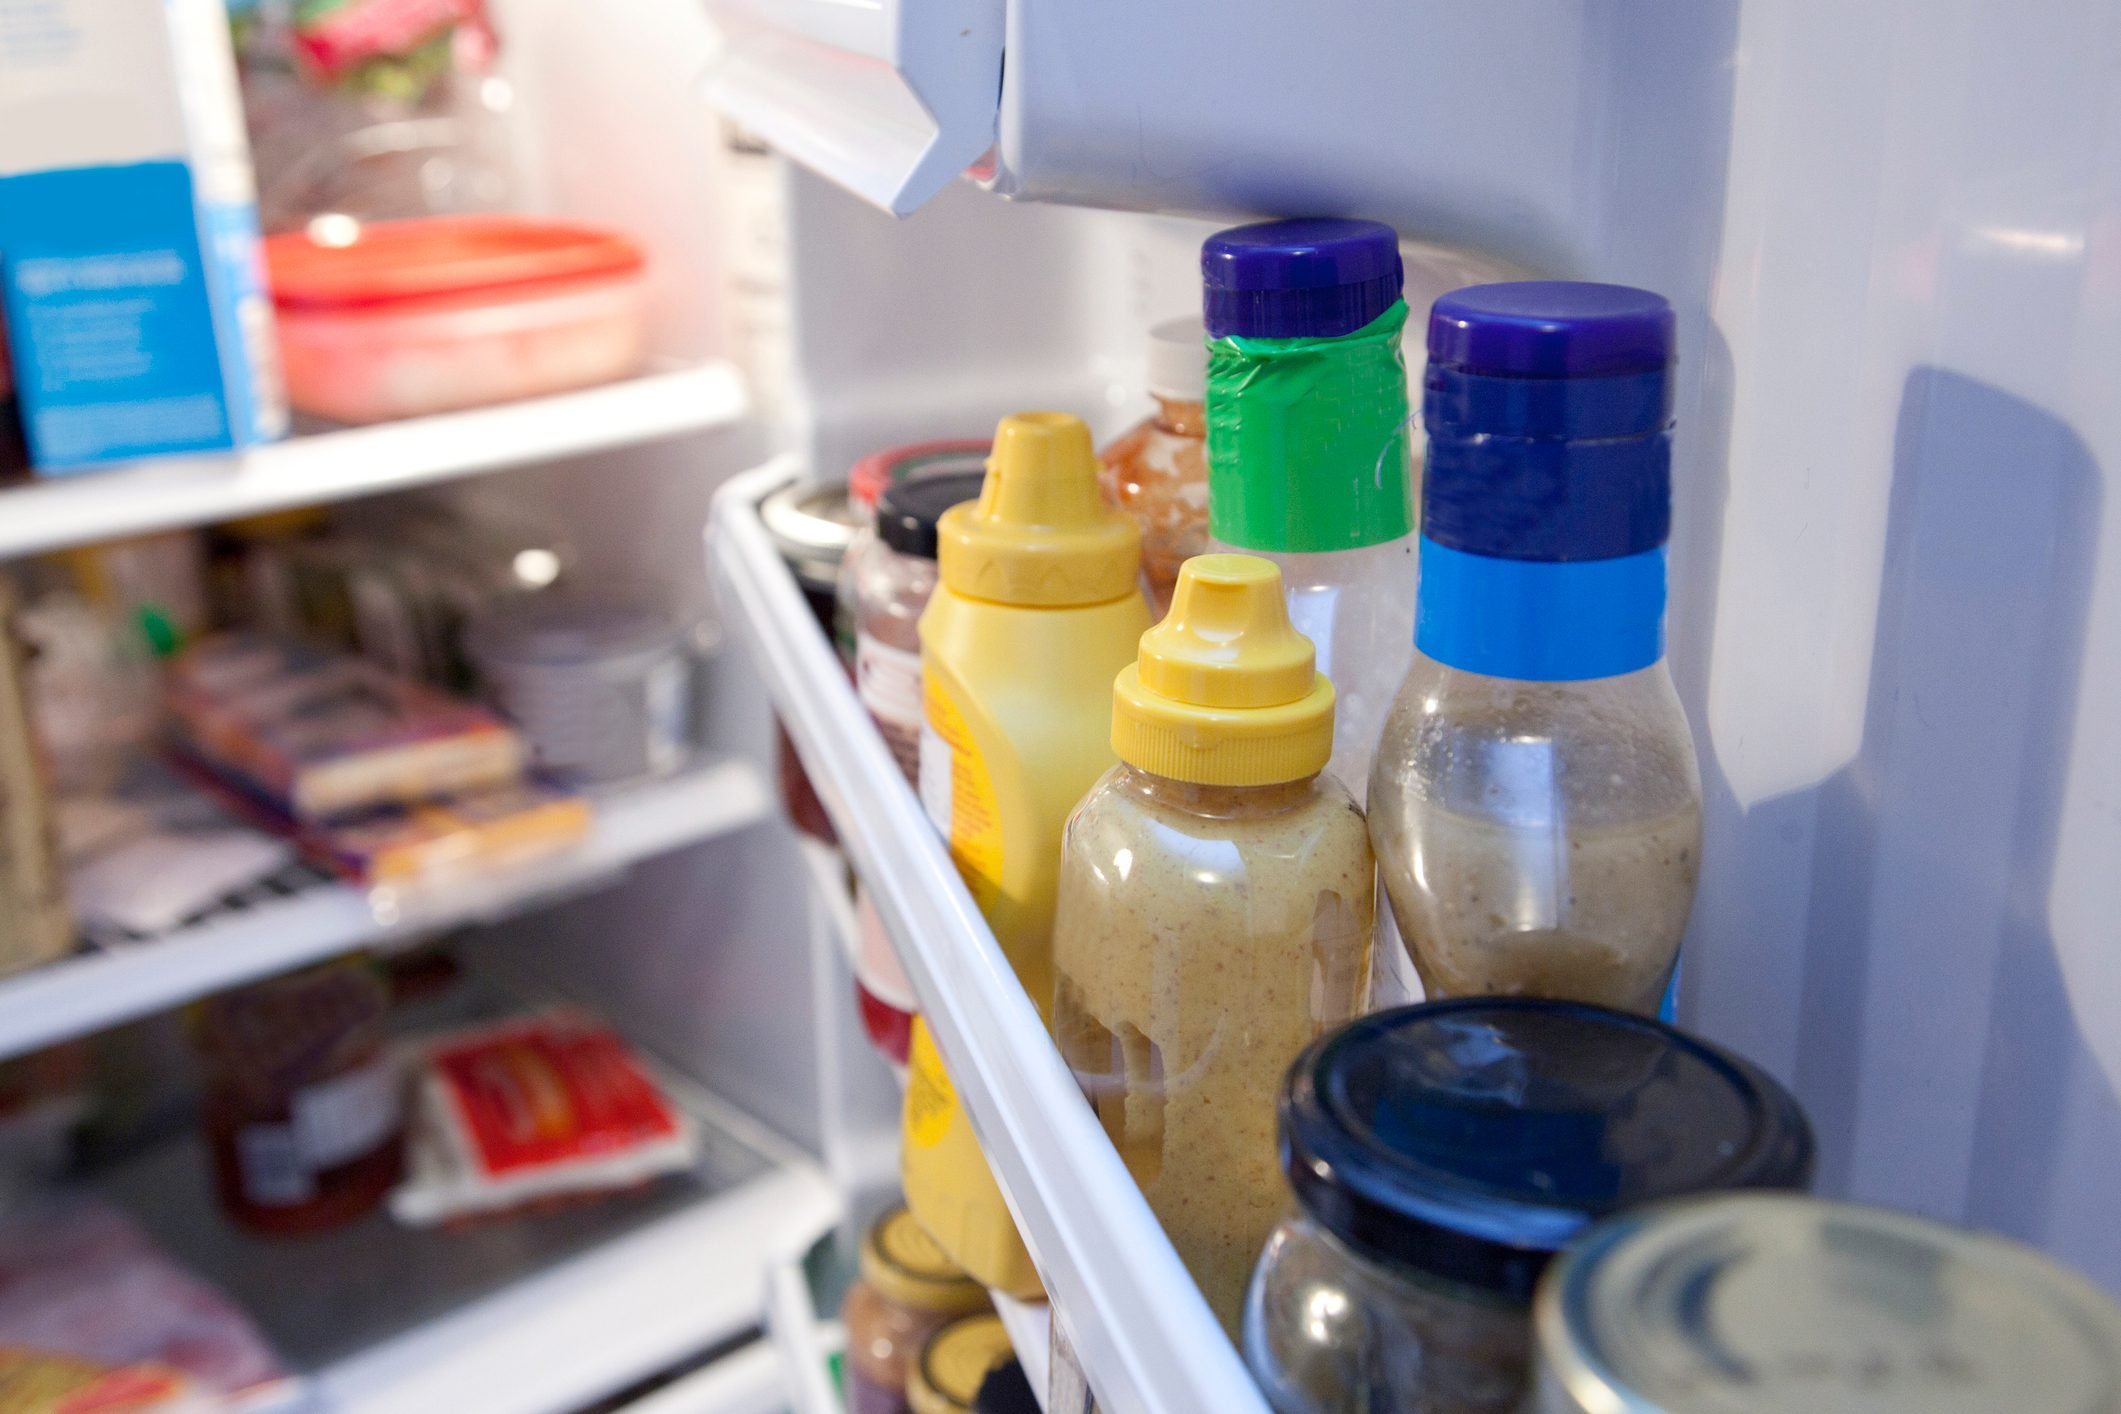 condiments in refrigerator